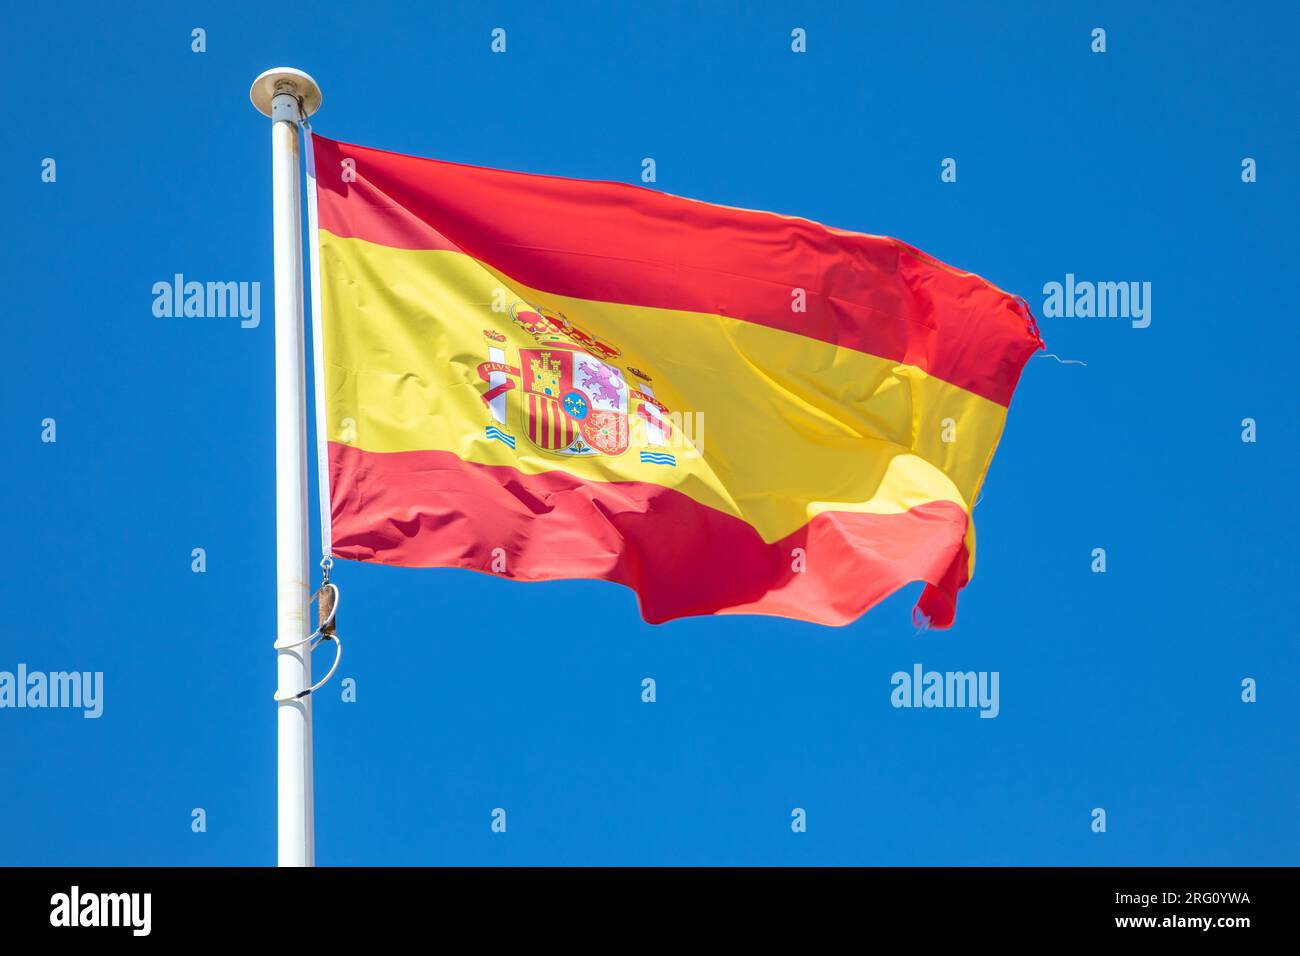 drapeau de l'espagne drapeau du pays espagnol rouge jaune sur le dessus du mât dans le vent et le ciel bleu Banque D'Images